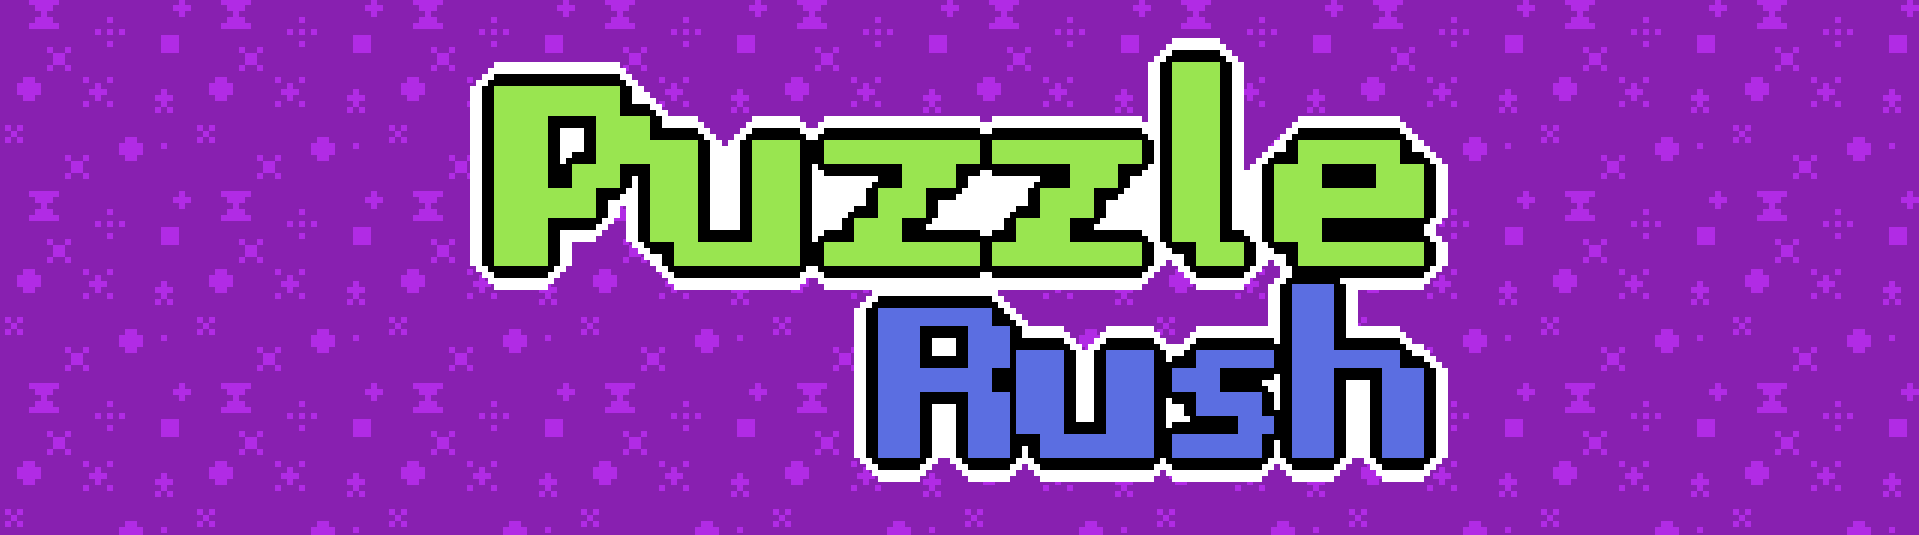 Puzzle Rush